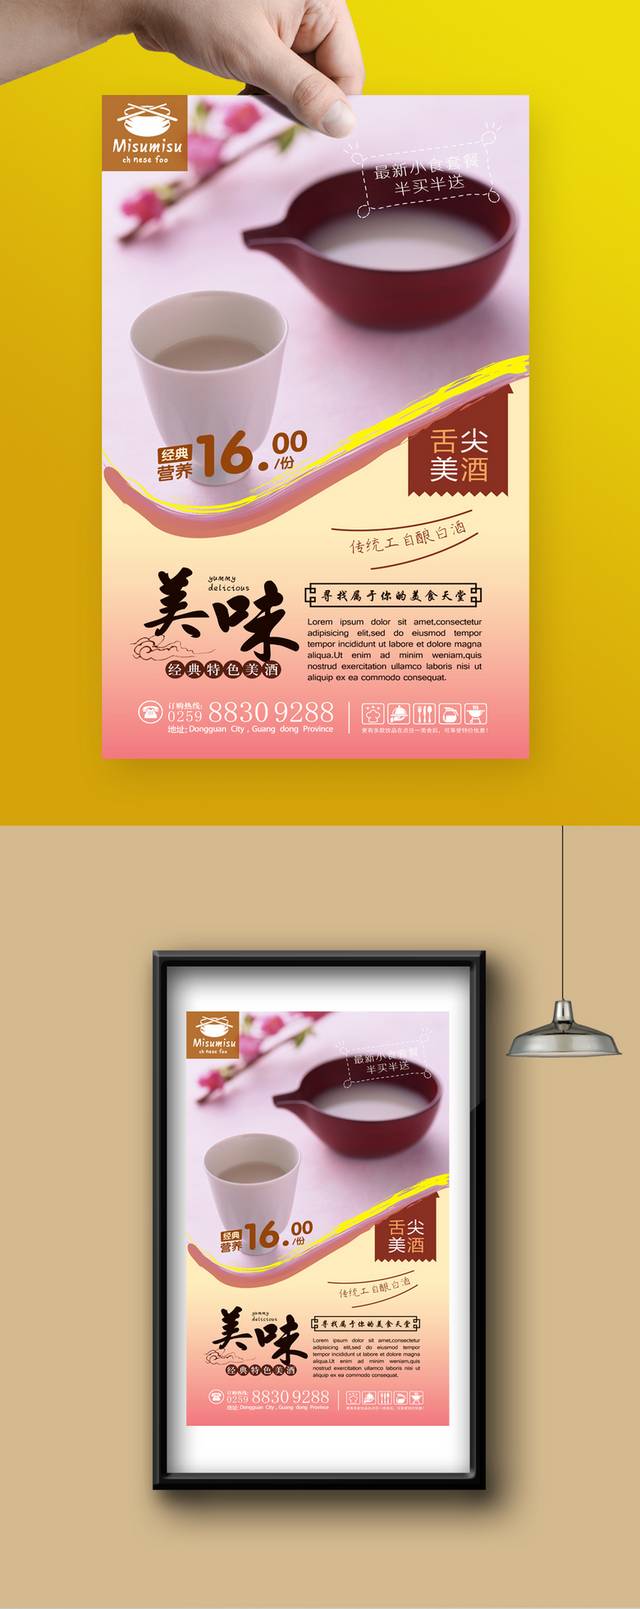 精美米酒宣传海报设计